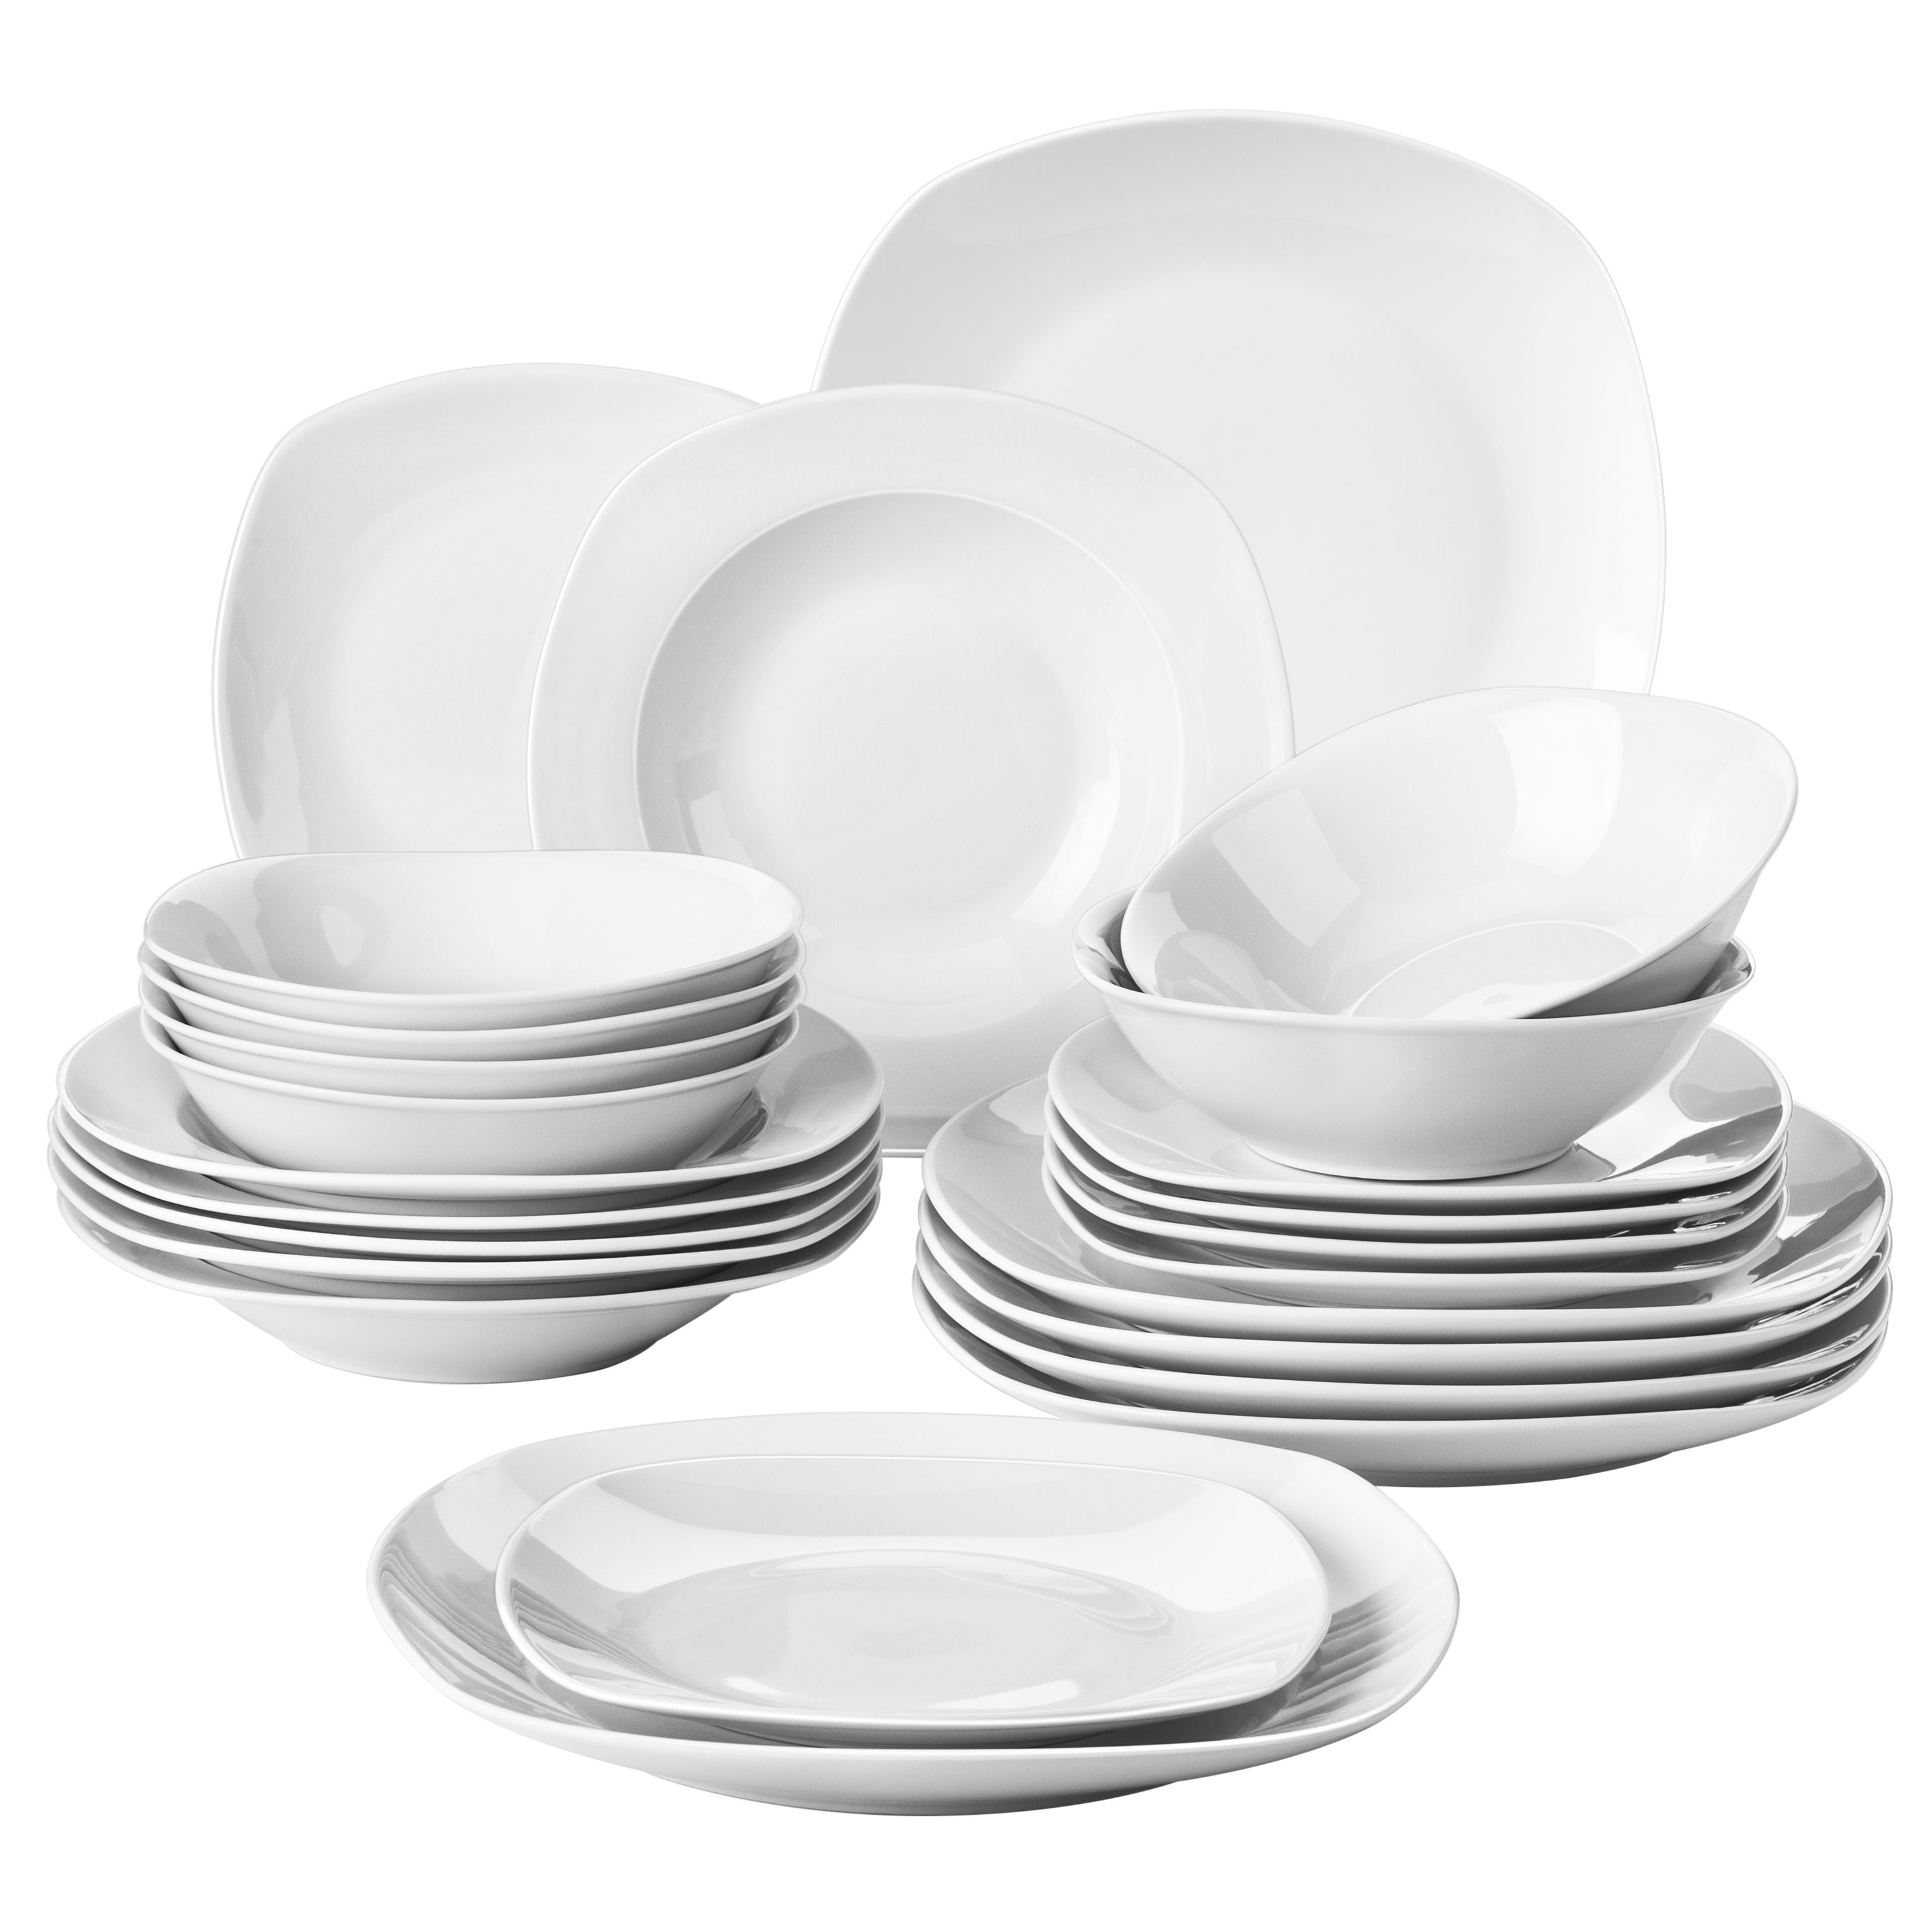 Pack of 6 White Oval Plates Porcelain Restaurant Hotel Quality Tableware Dinner 